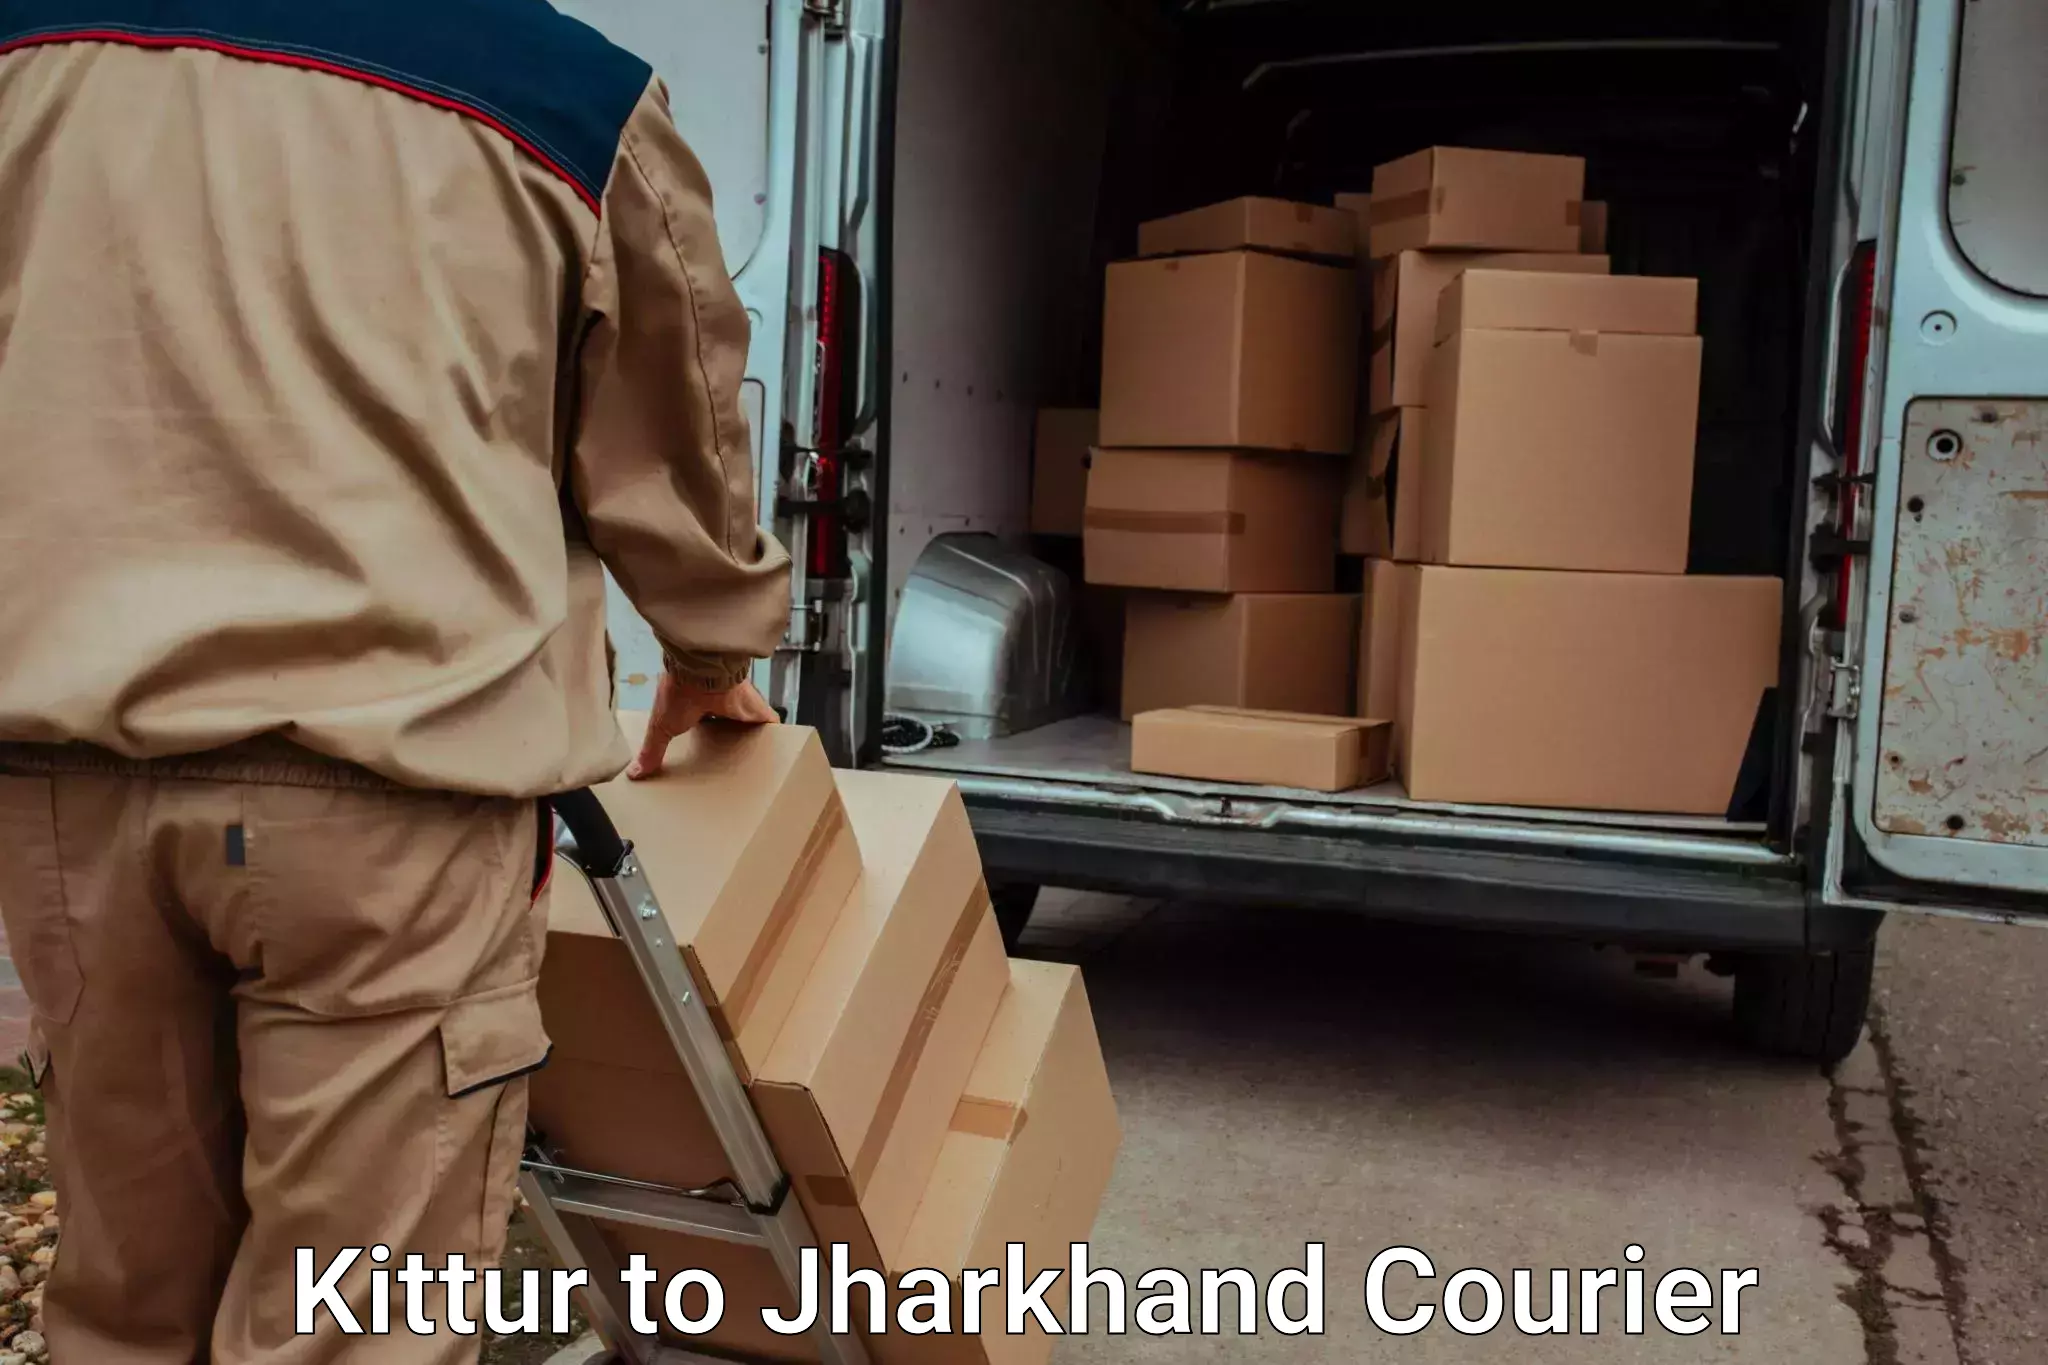 Holiday season luggage delivery Kittur to Giridih